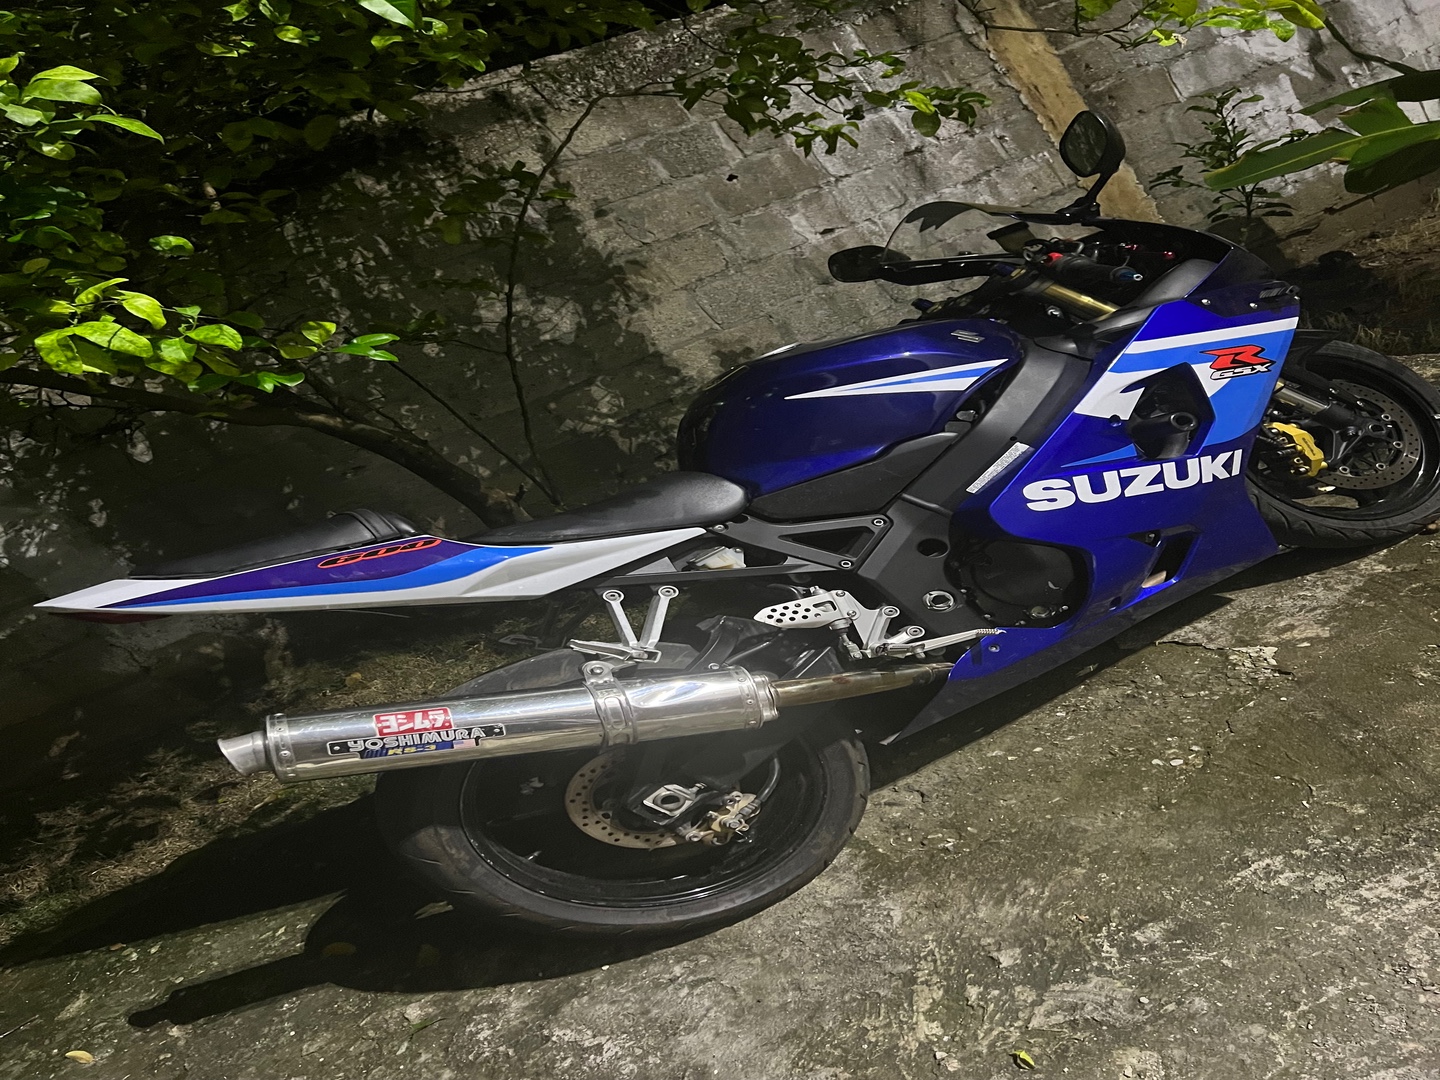 motores y pasolas - Como nuevo. Vendo mi Suzuki GZX 600 
como nuevo!!!!! 
Condiciones excelente!!!